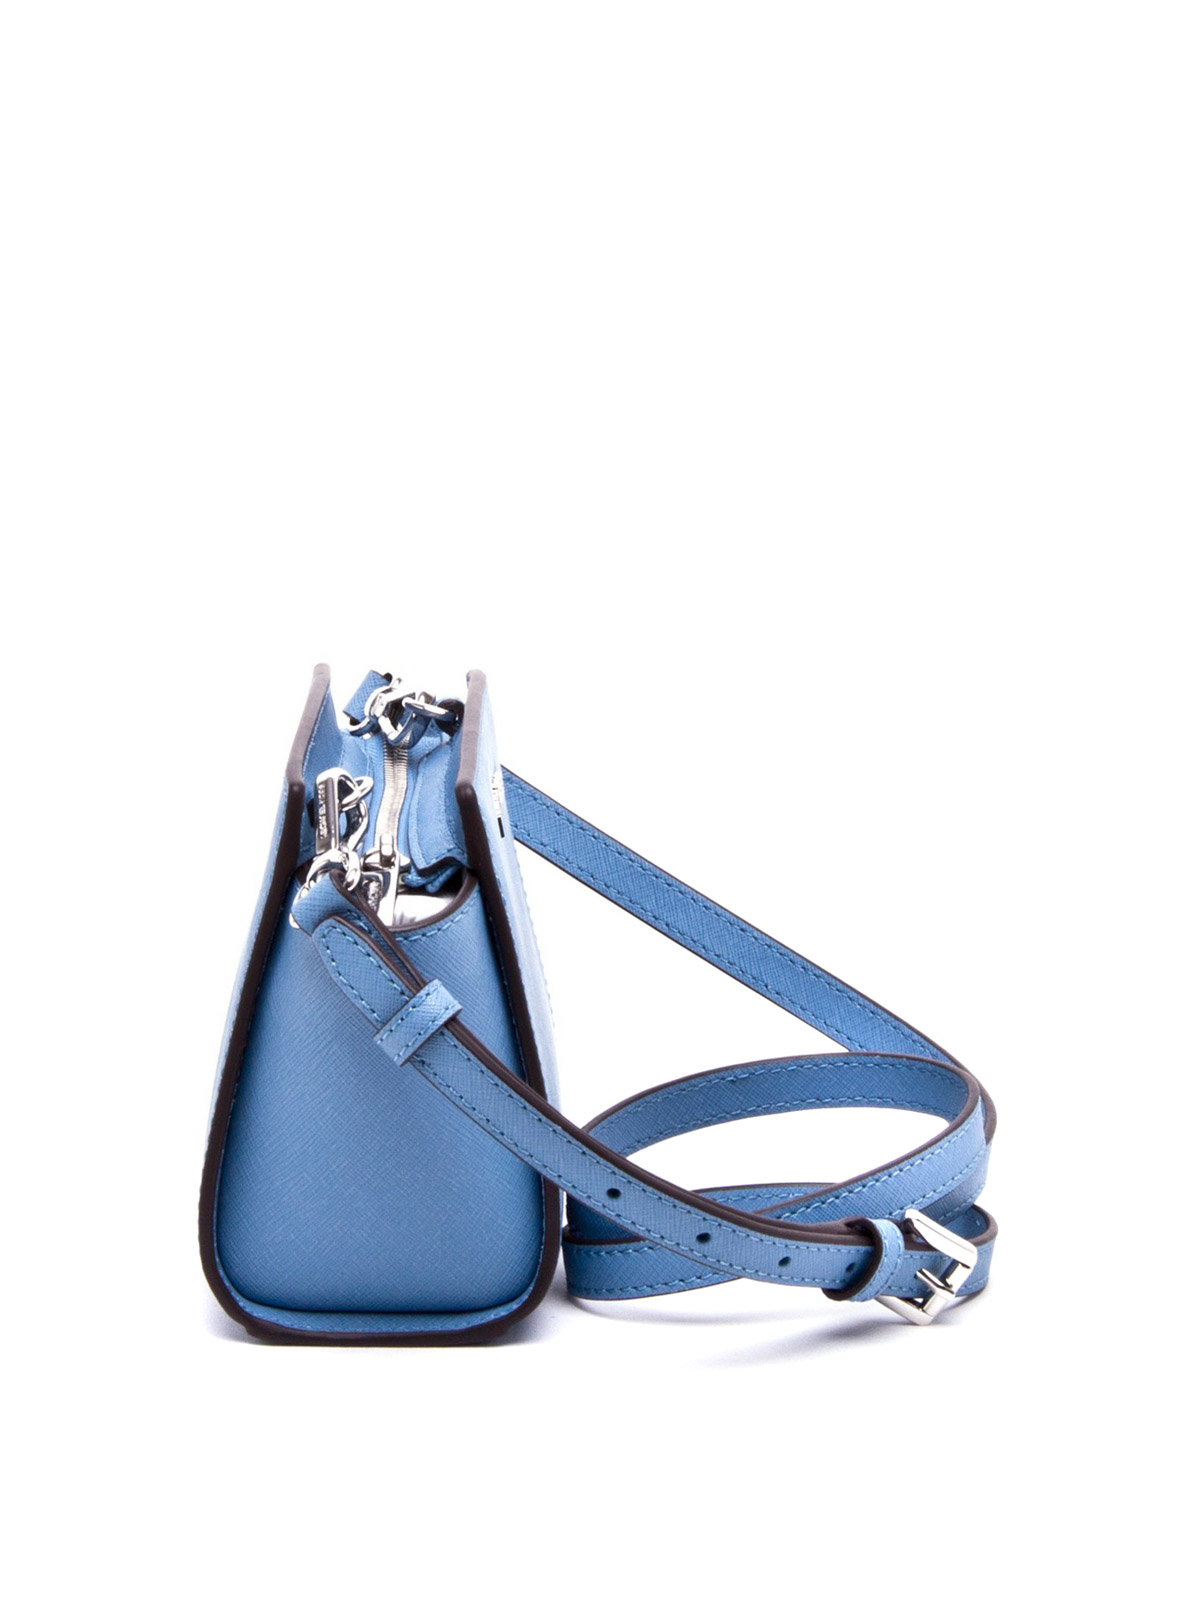 Cross body bags Michael Kors - Selma Mini saffiano cross body bag